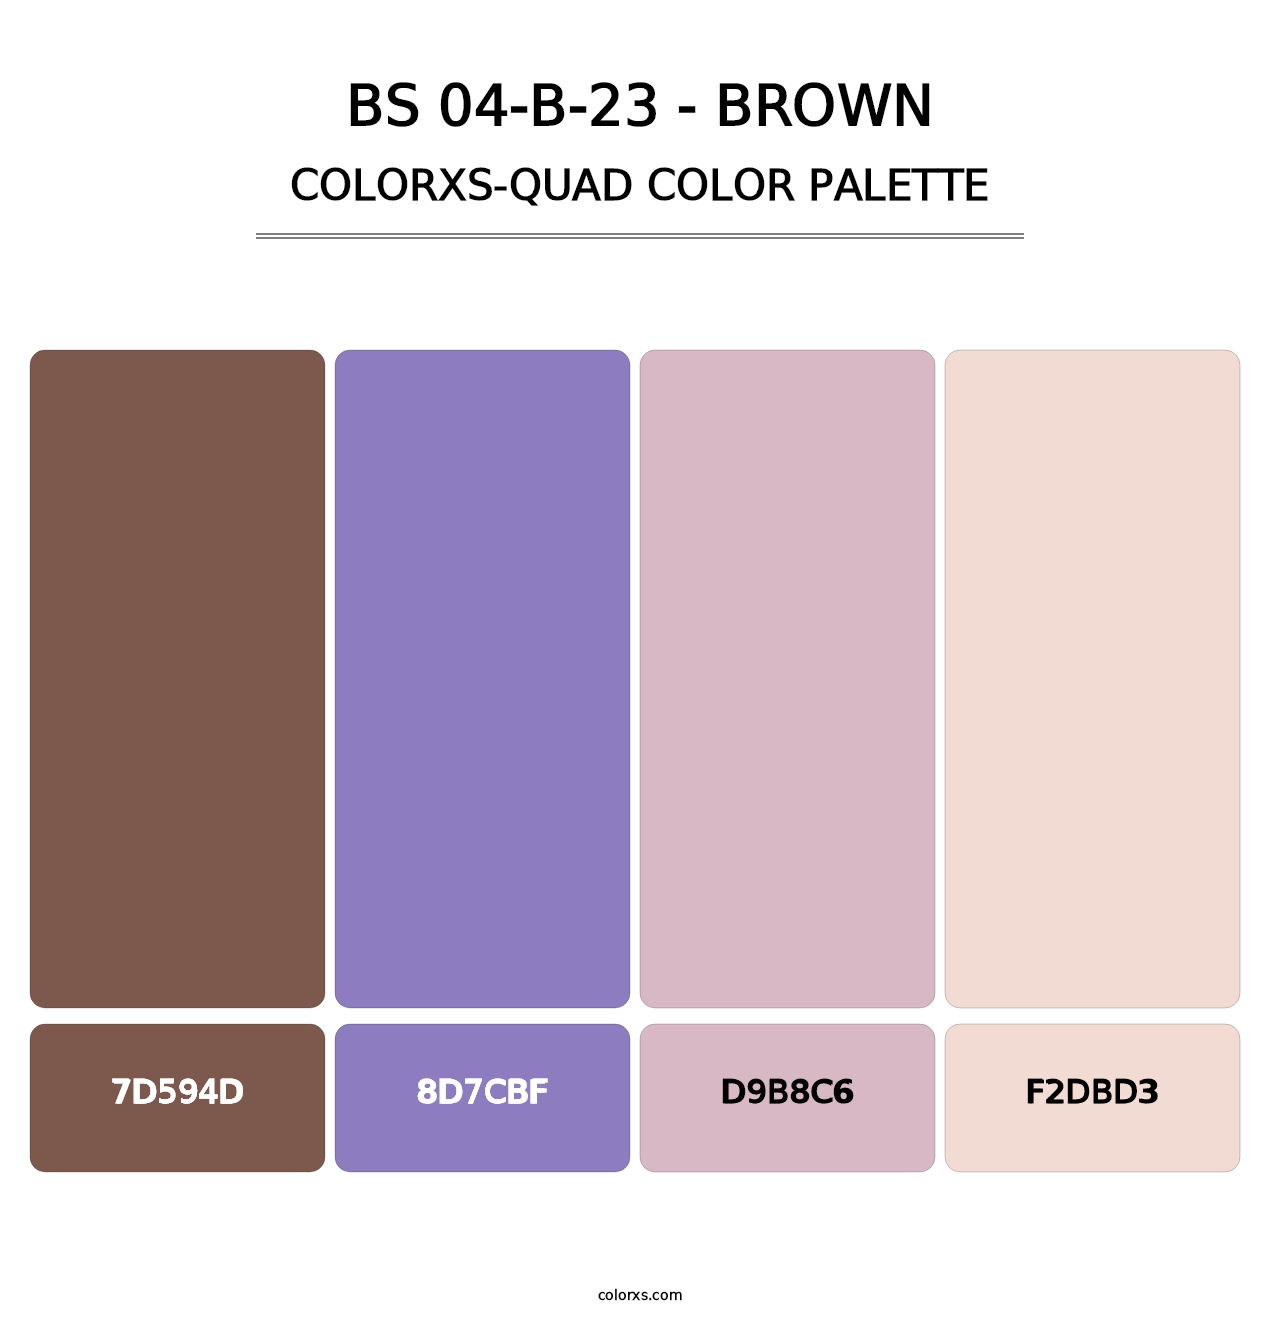 BS 04-B-23 - Brown - Colorxs Quad Palette